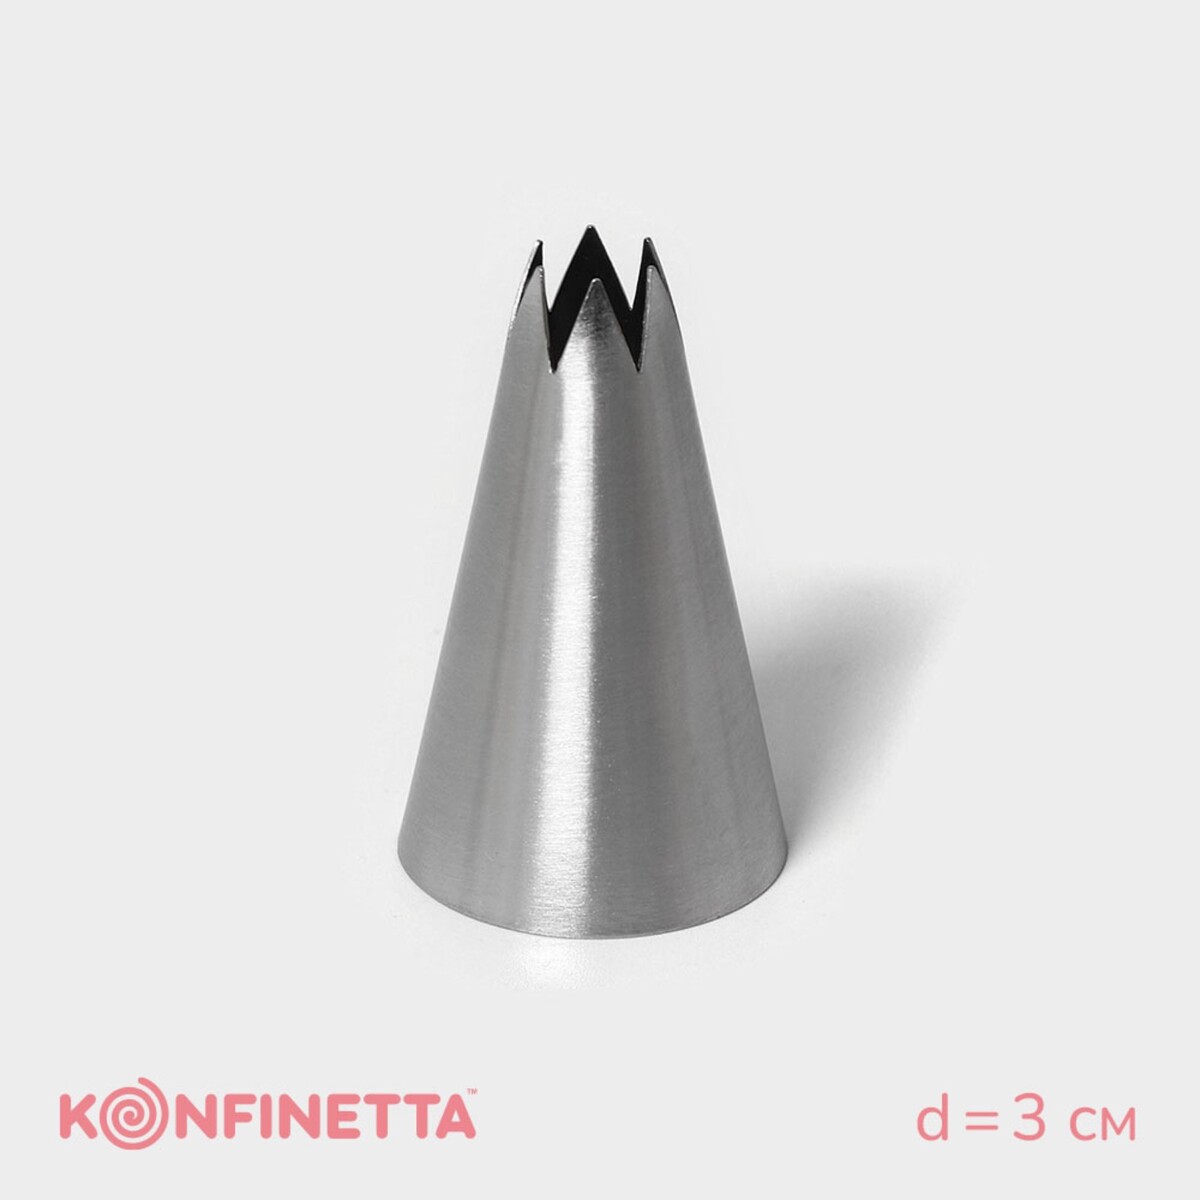 Насадка кондитерская konfinetta насадка кондитерская konfinetta d 3 см выход 1 7 см нержавеющая сталь